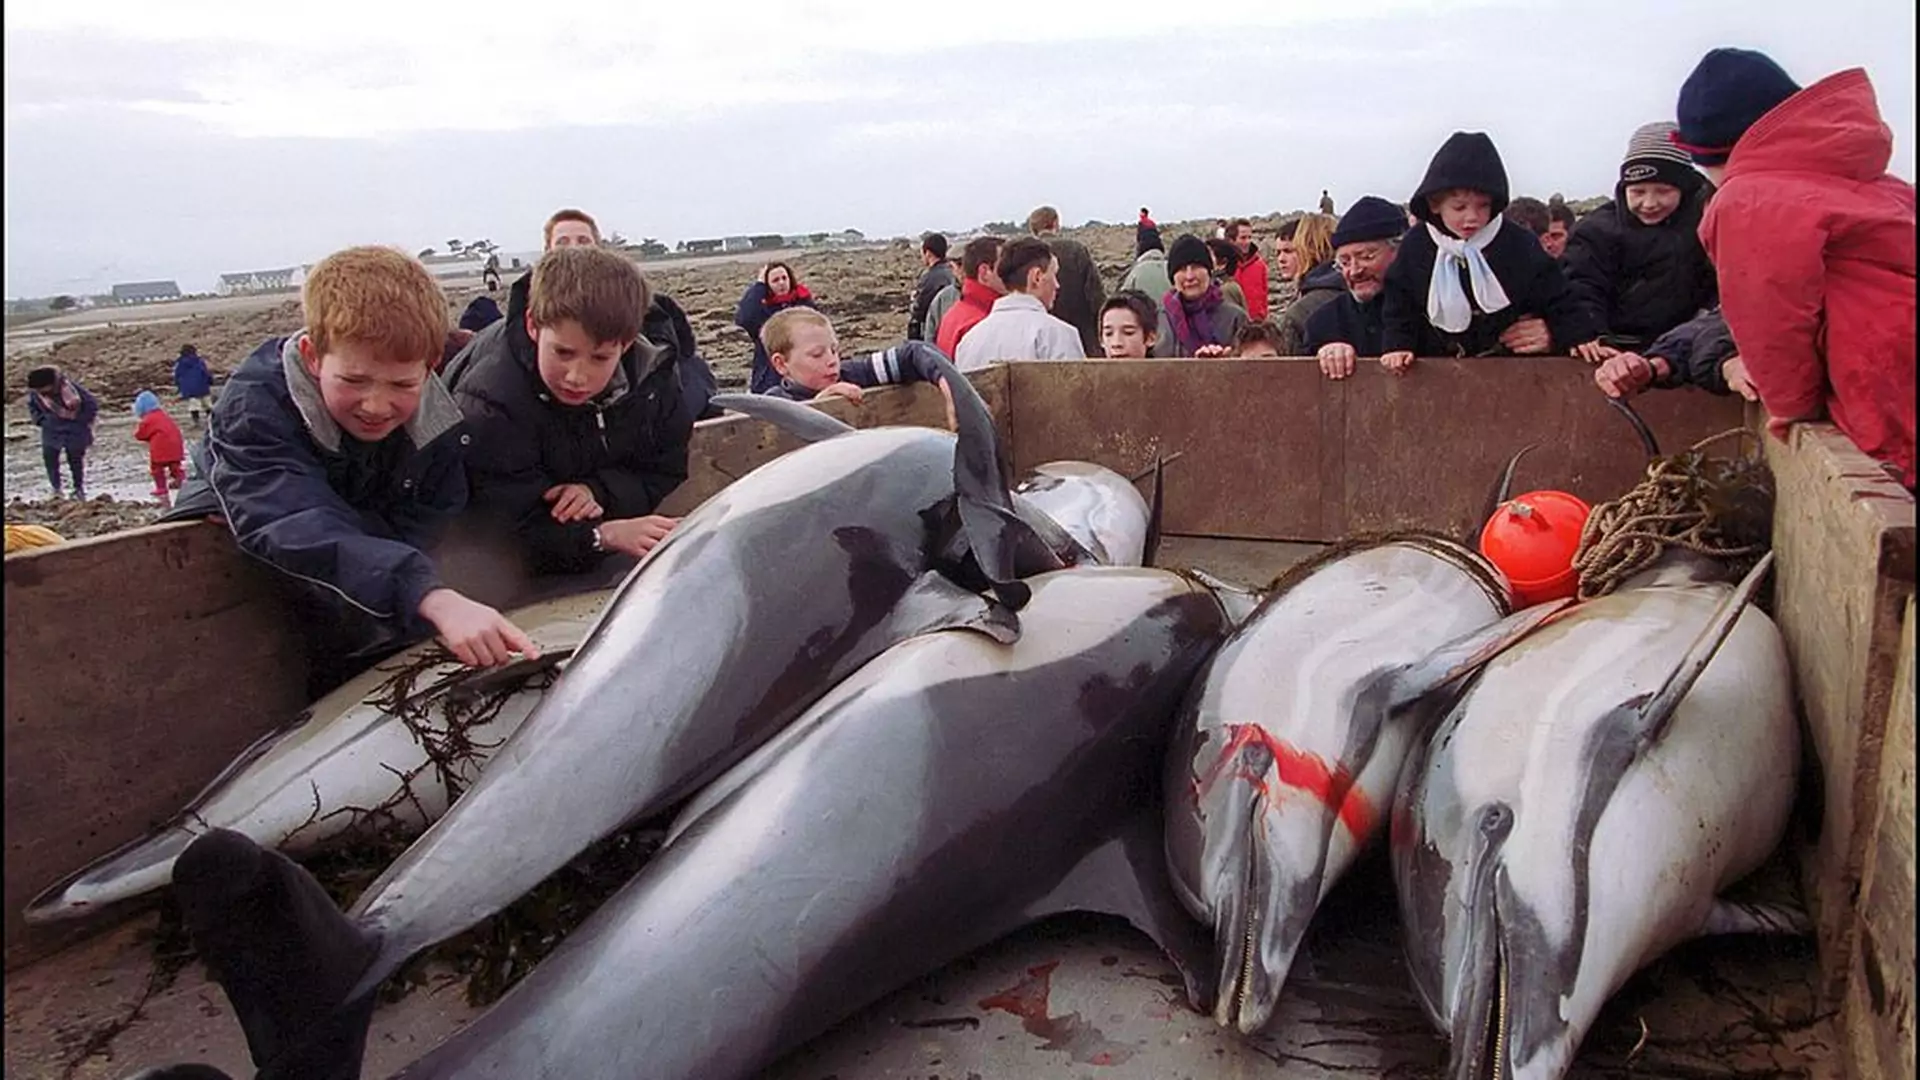 1100 martwych delfinów wyrzuconych na wybrzeże. To wina człowieka